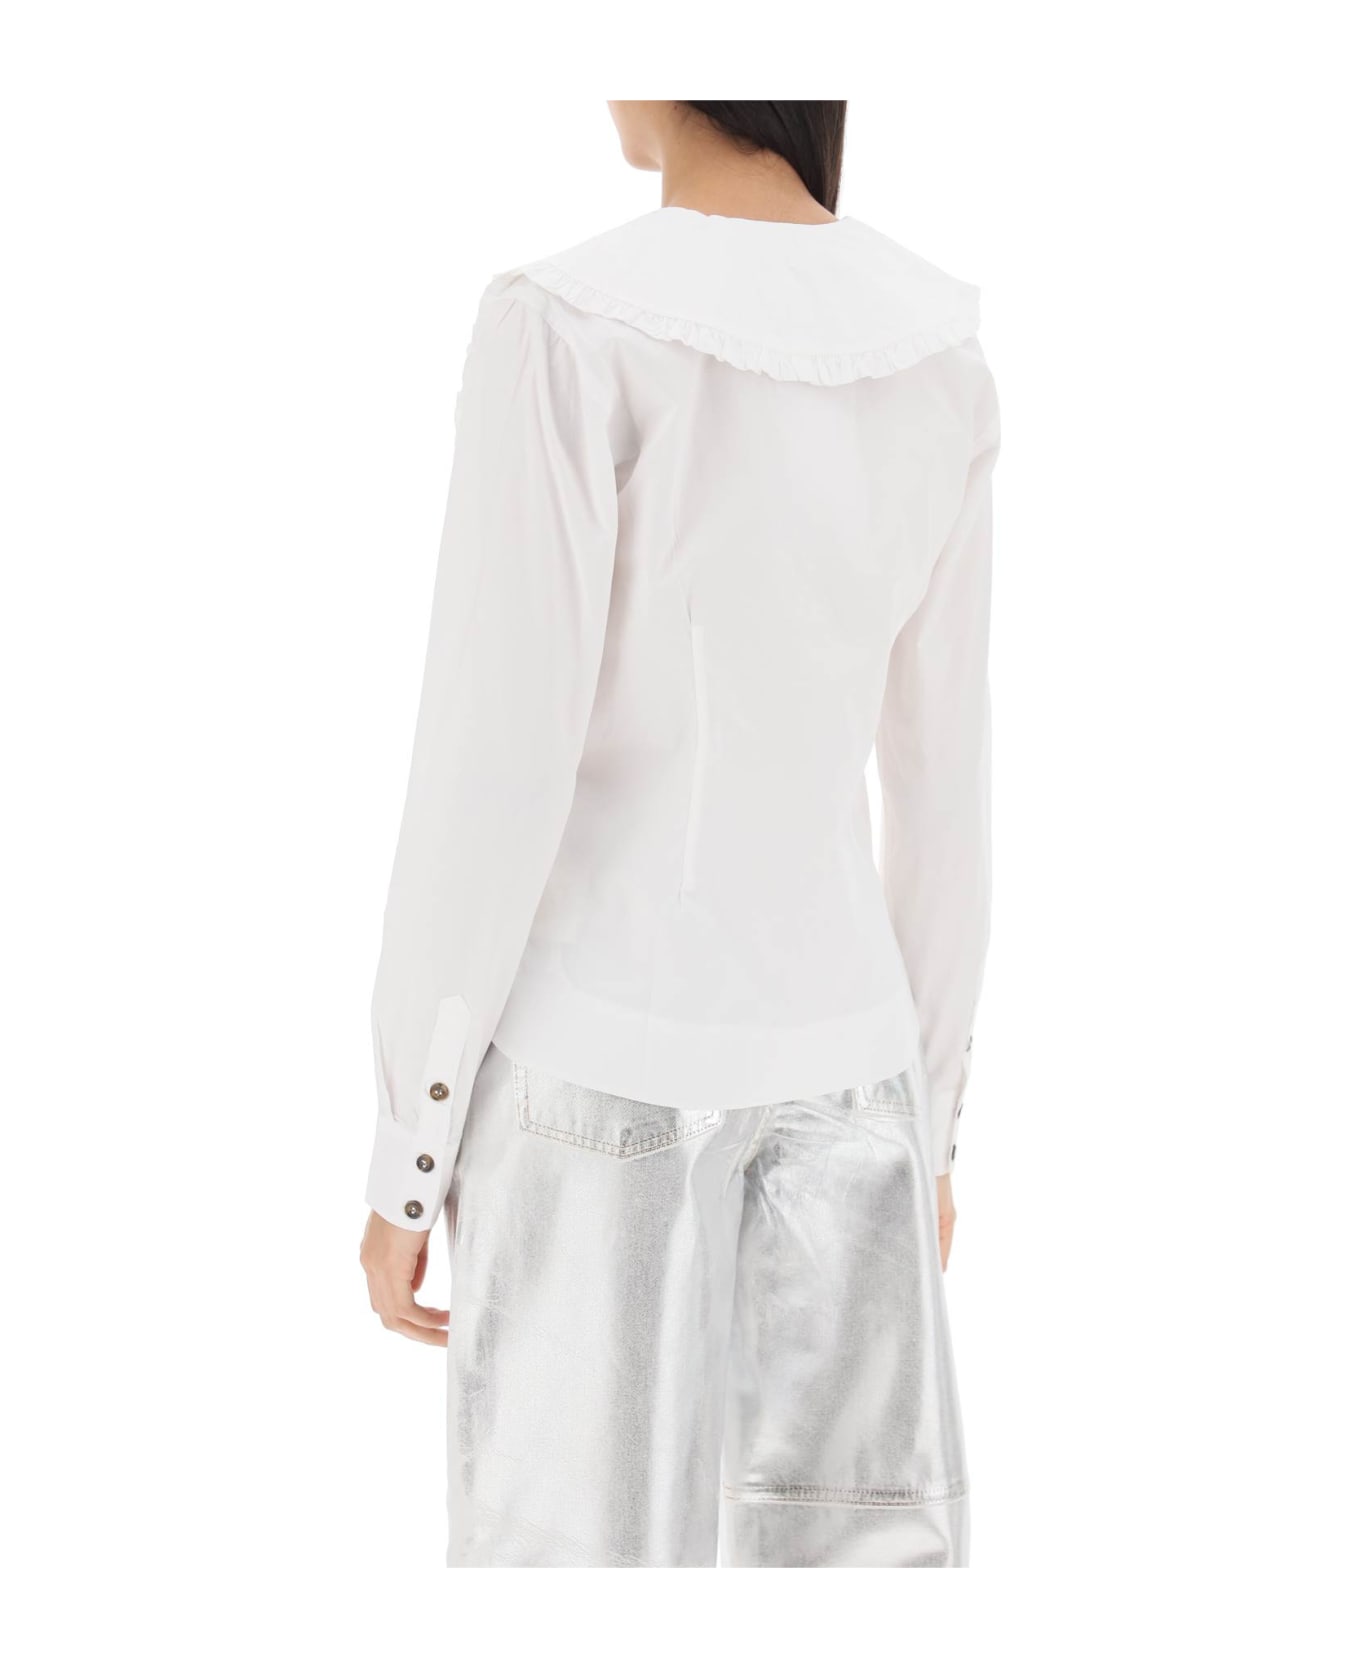 Ganni Maxi Collar Shirt - BRIGHT WHITE (White) シャツ